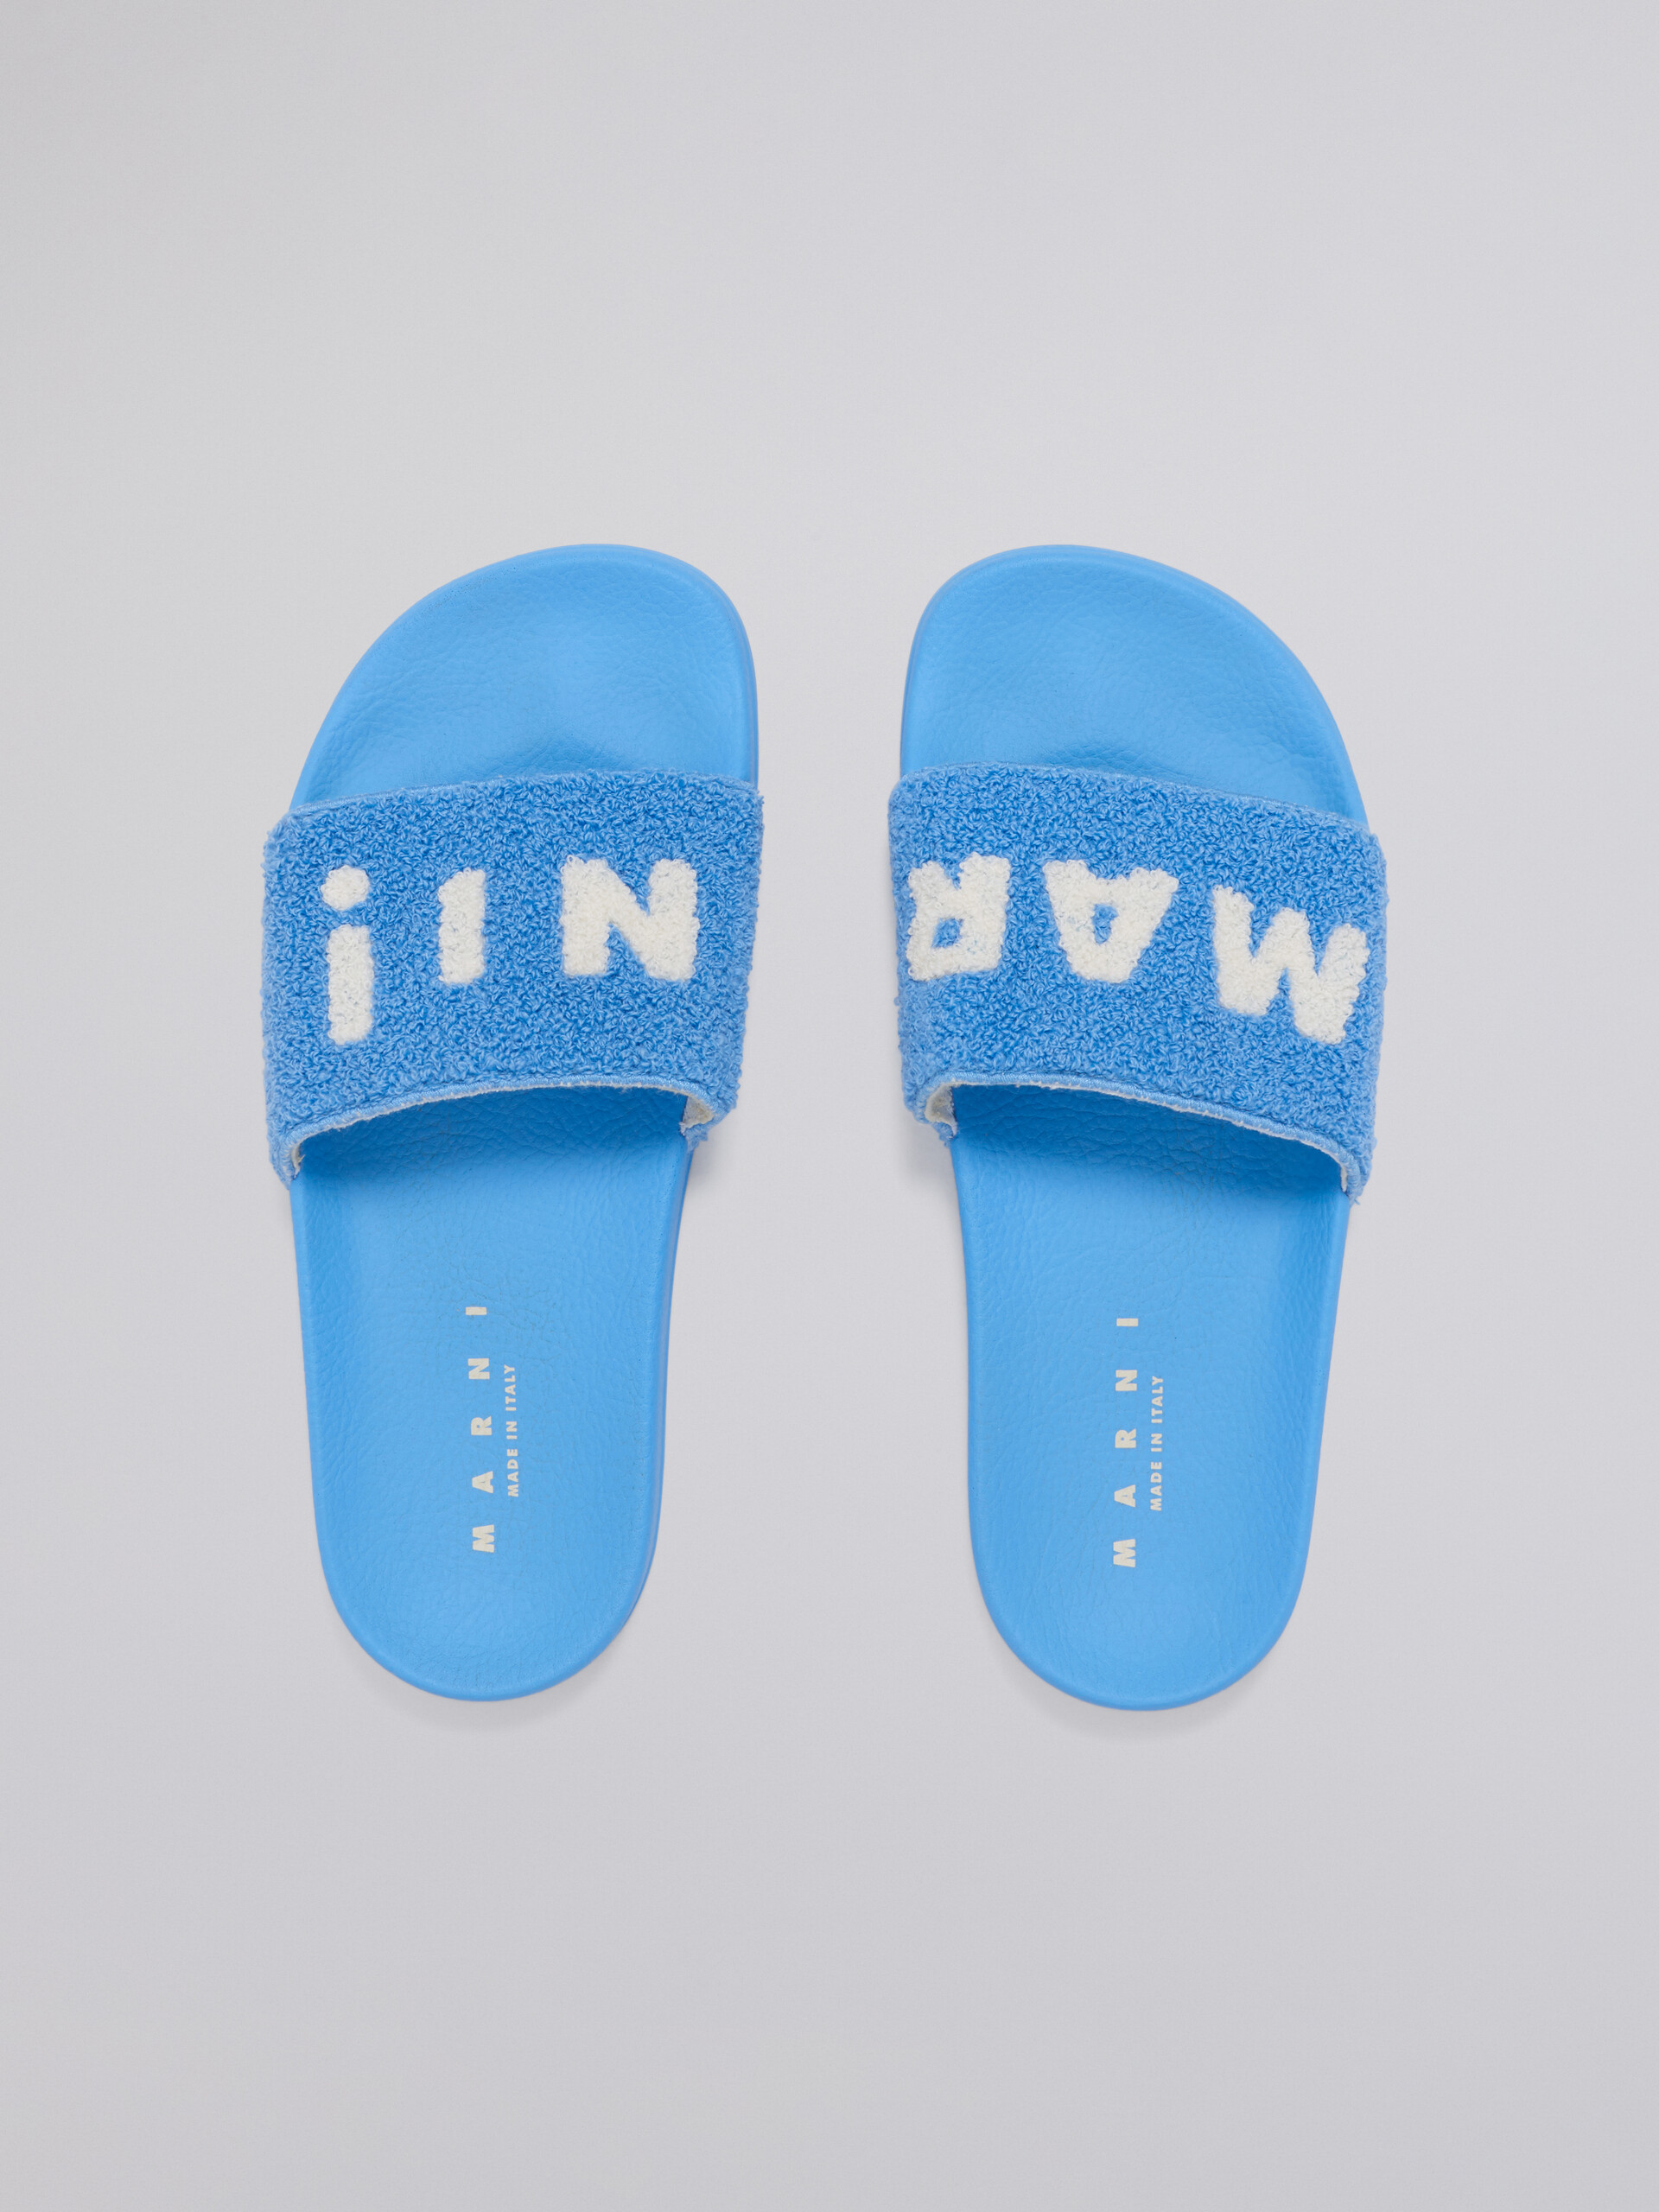 Sandalo in gomma con tomaia in spugna azzurro e bianco - Sandali - Image 4